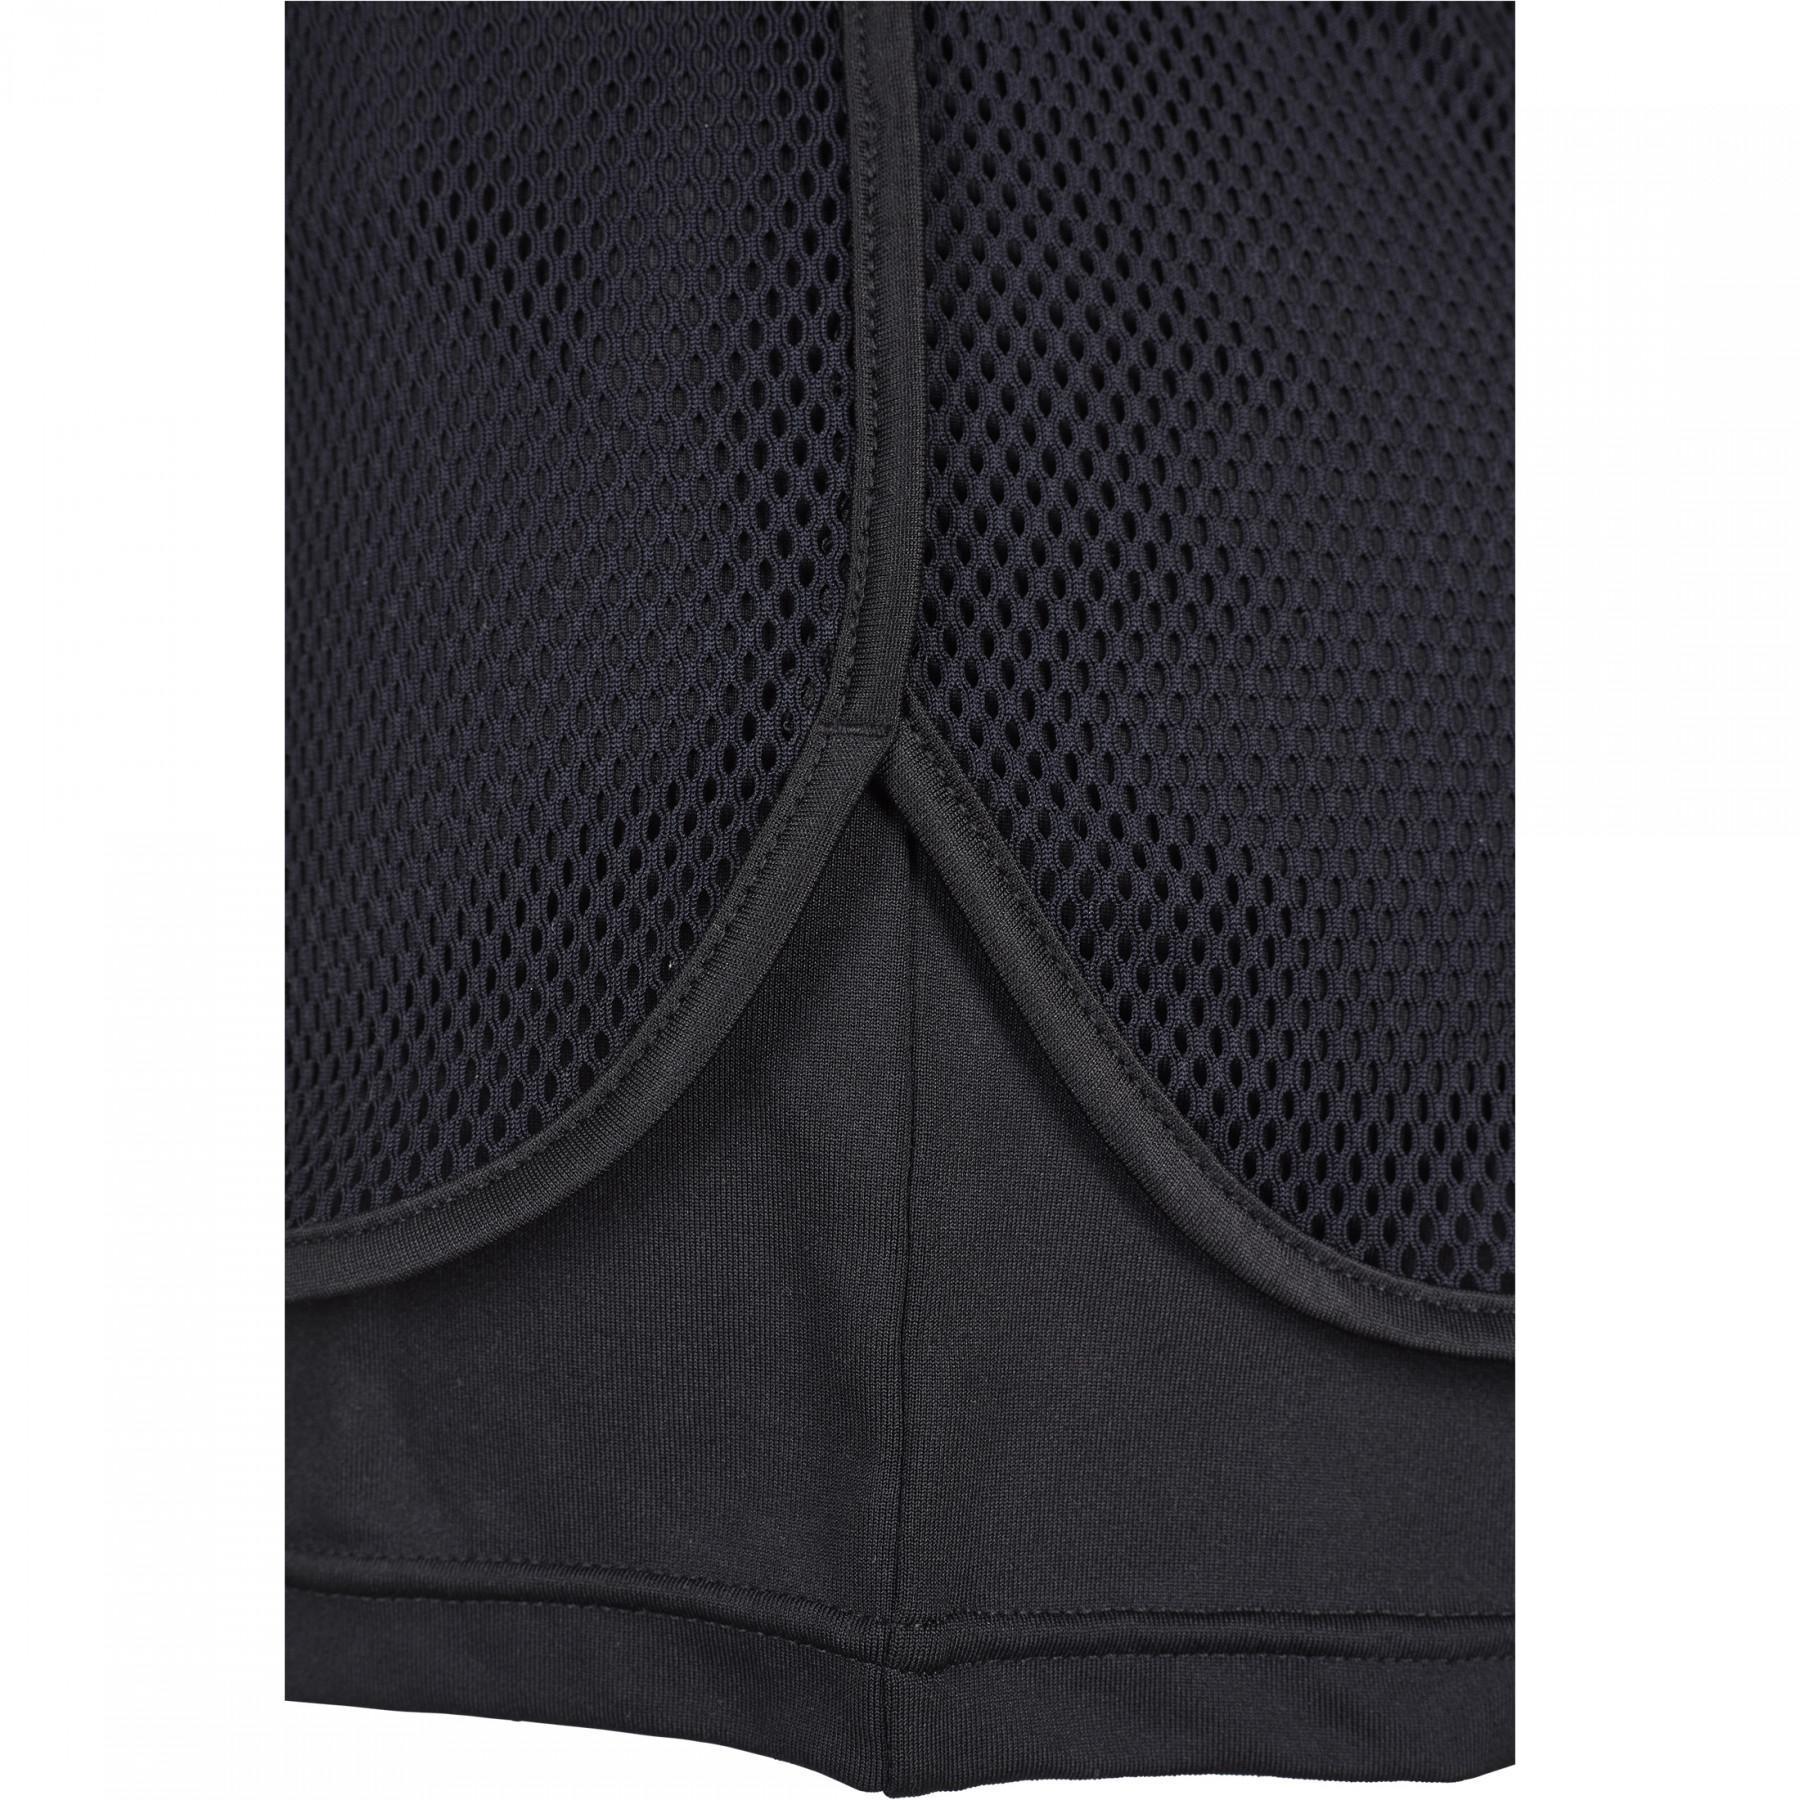 Women's Urban Classic double layer mesh shorts